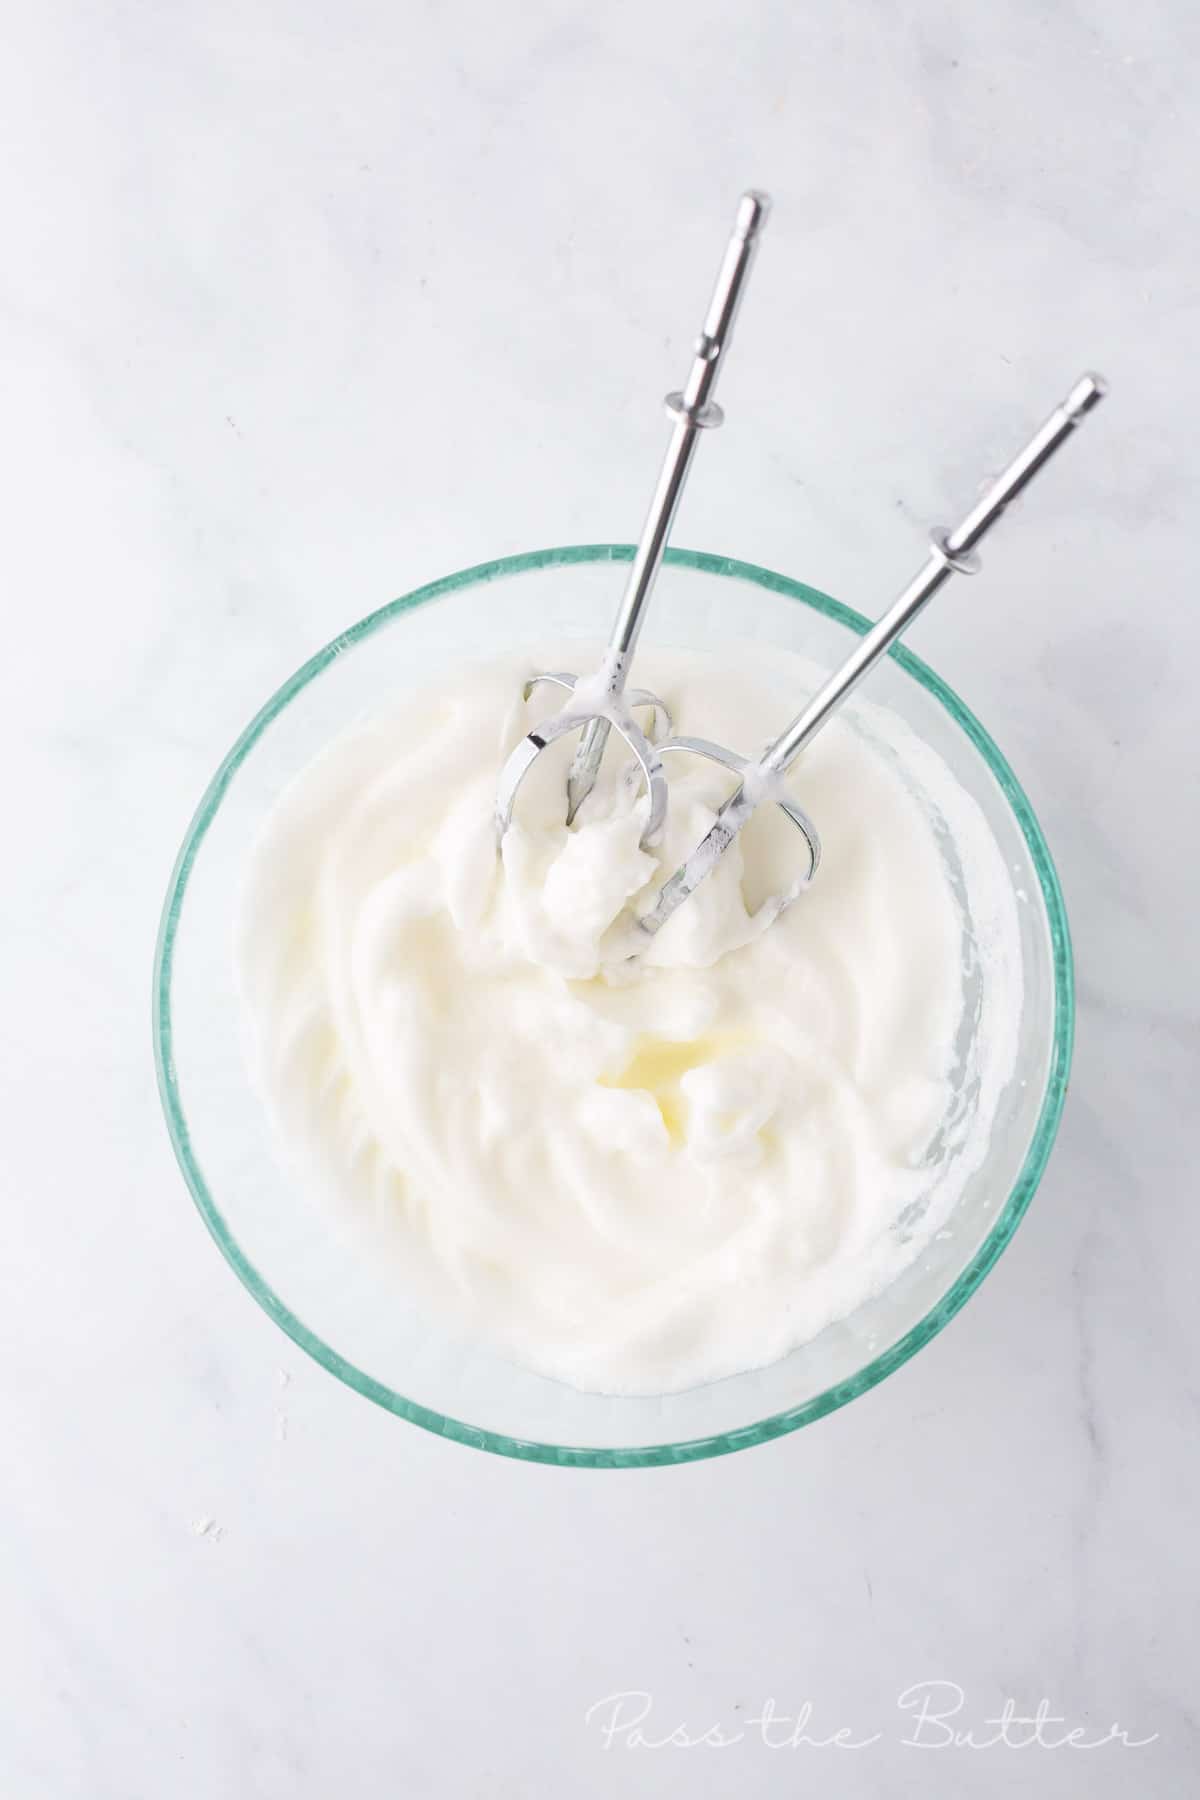 Whisk the egg whites until stiff peaks form